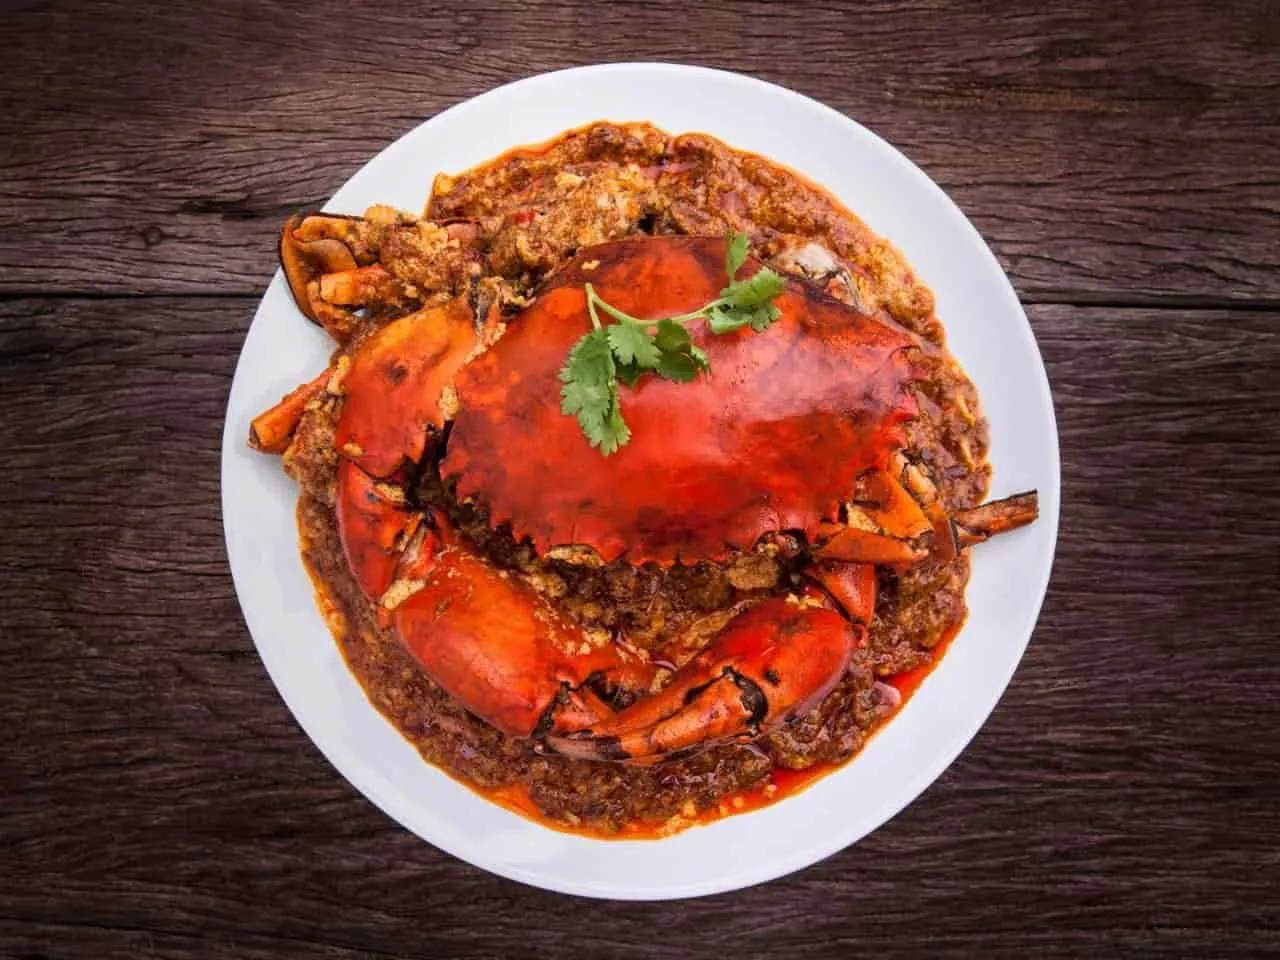 Cua sốt cay Chili crab - món đặc sản nổi tiếng của Singapore